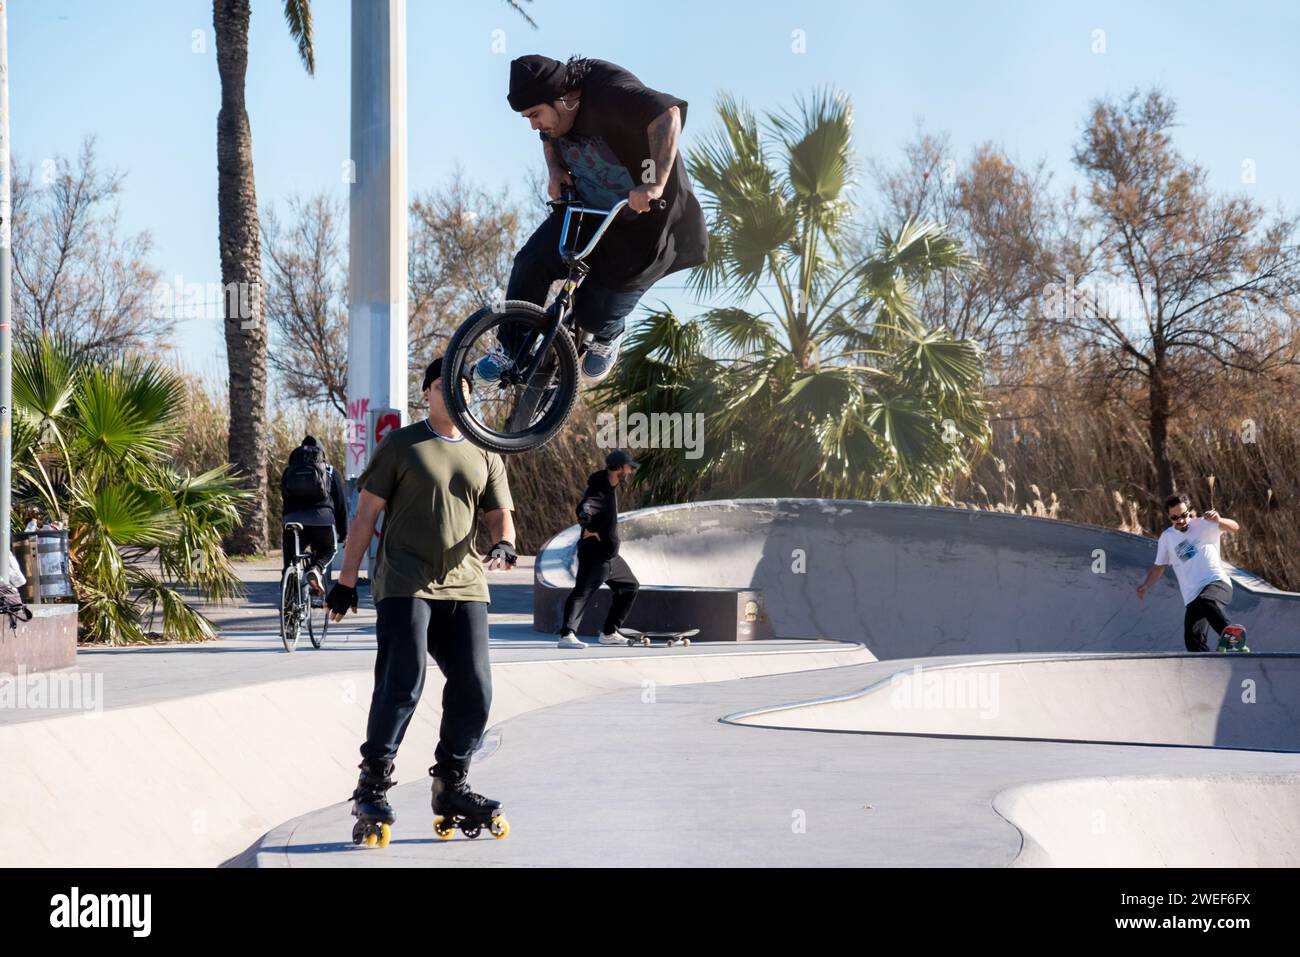 Lebendiges Skate-Leben: BMX-Jump-, Skater- und Skateboarder erzeugen im urbanen Skatepark dynamische Energie. Stockfoto